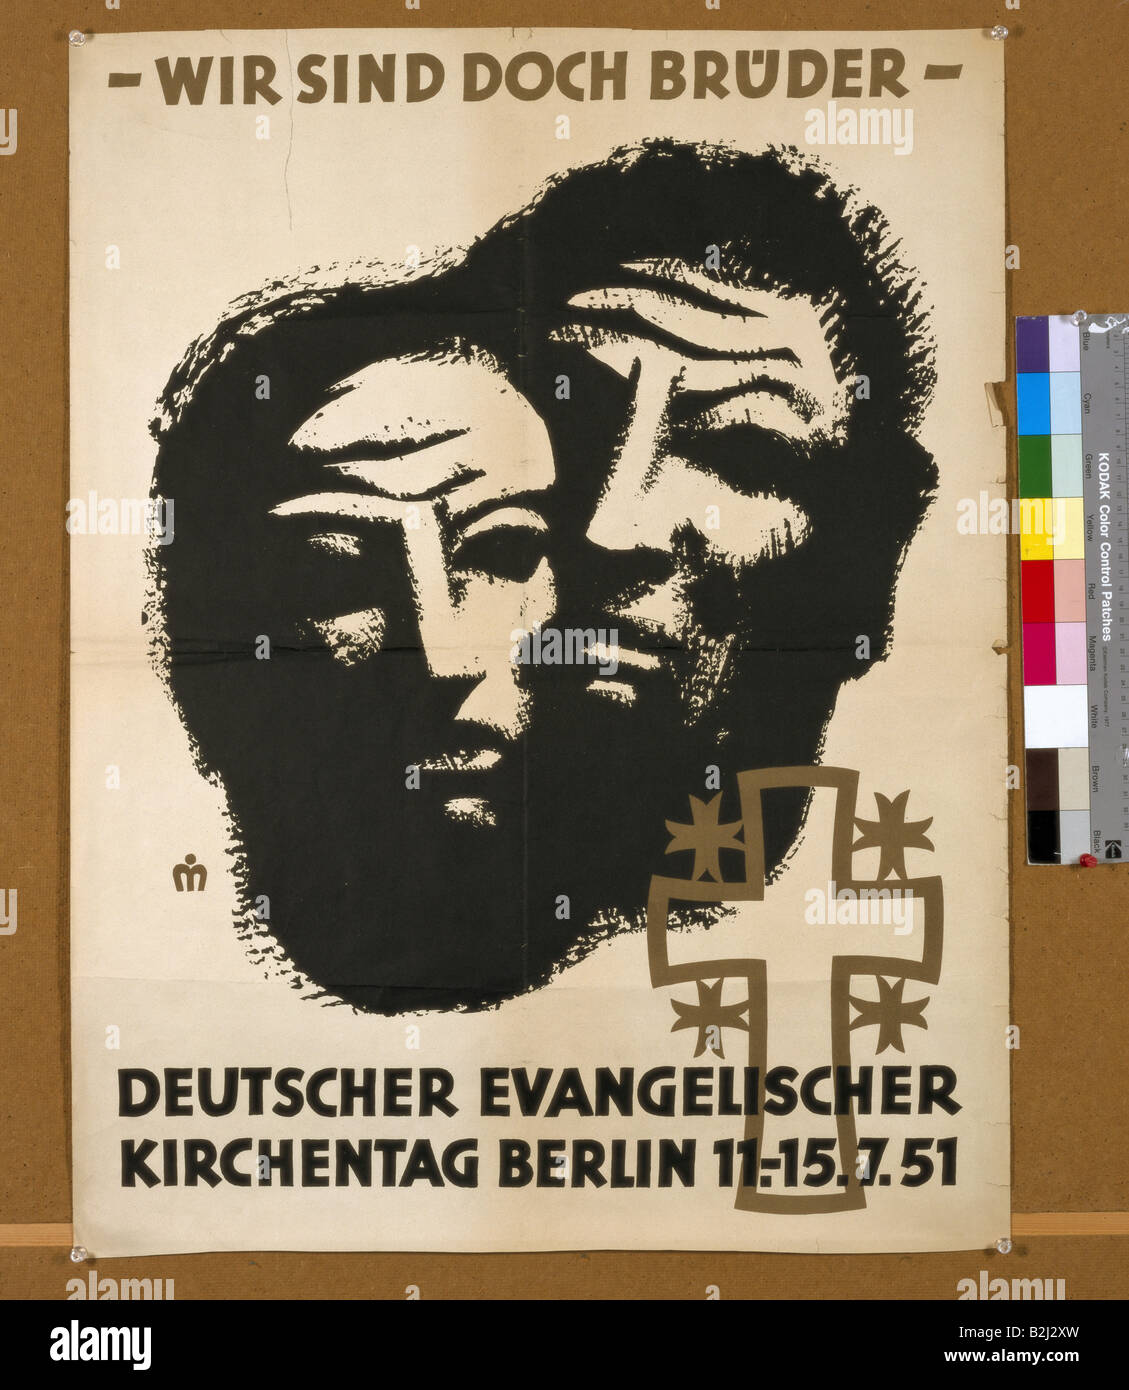 religion, Christianity, Protestant Church Congress, 'Wir sind doch Brueder' (We are brothers after all), Deutscher Evangelischer Kirchentag, Berlin, 11.7.1951 - 15.7.1951, advertisement, Stock Photo